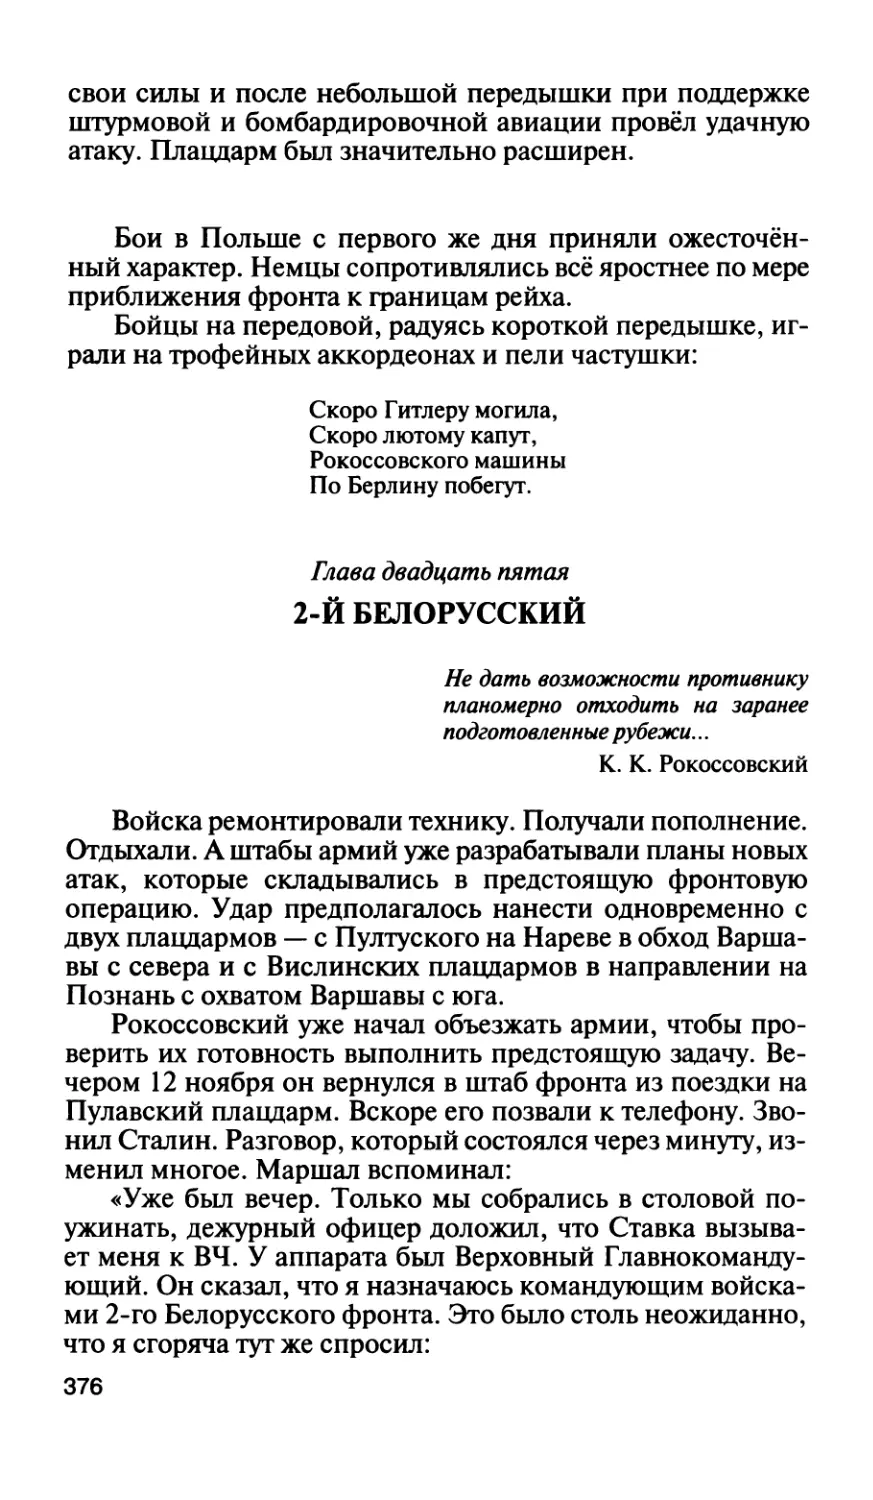 Глава двадцать пятая. 2-й Белорусский